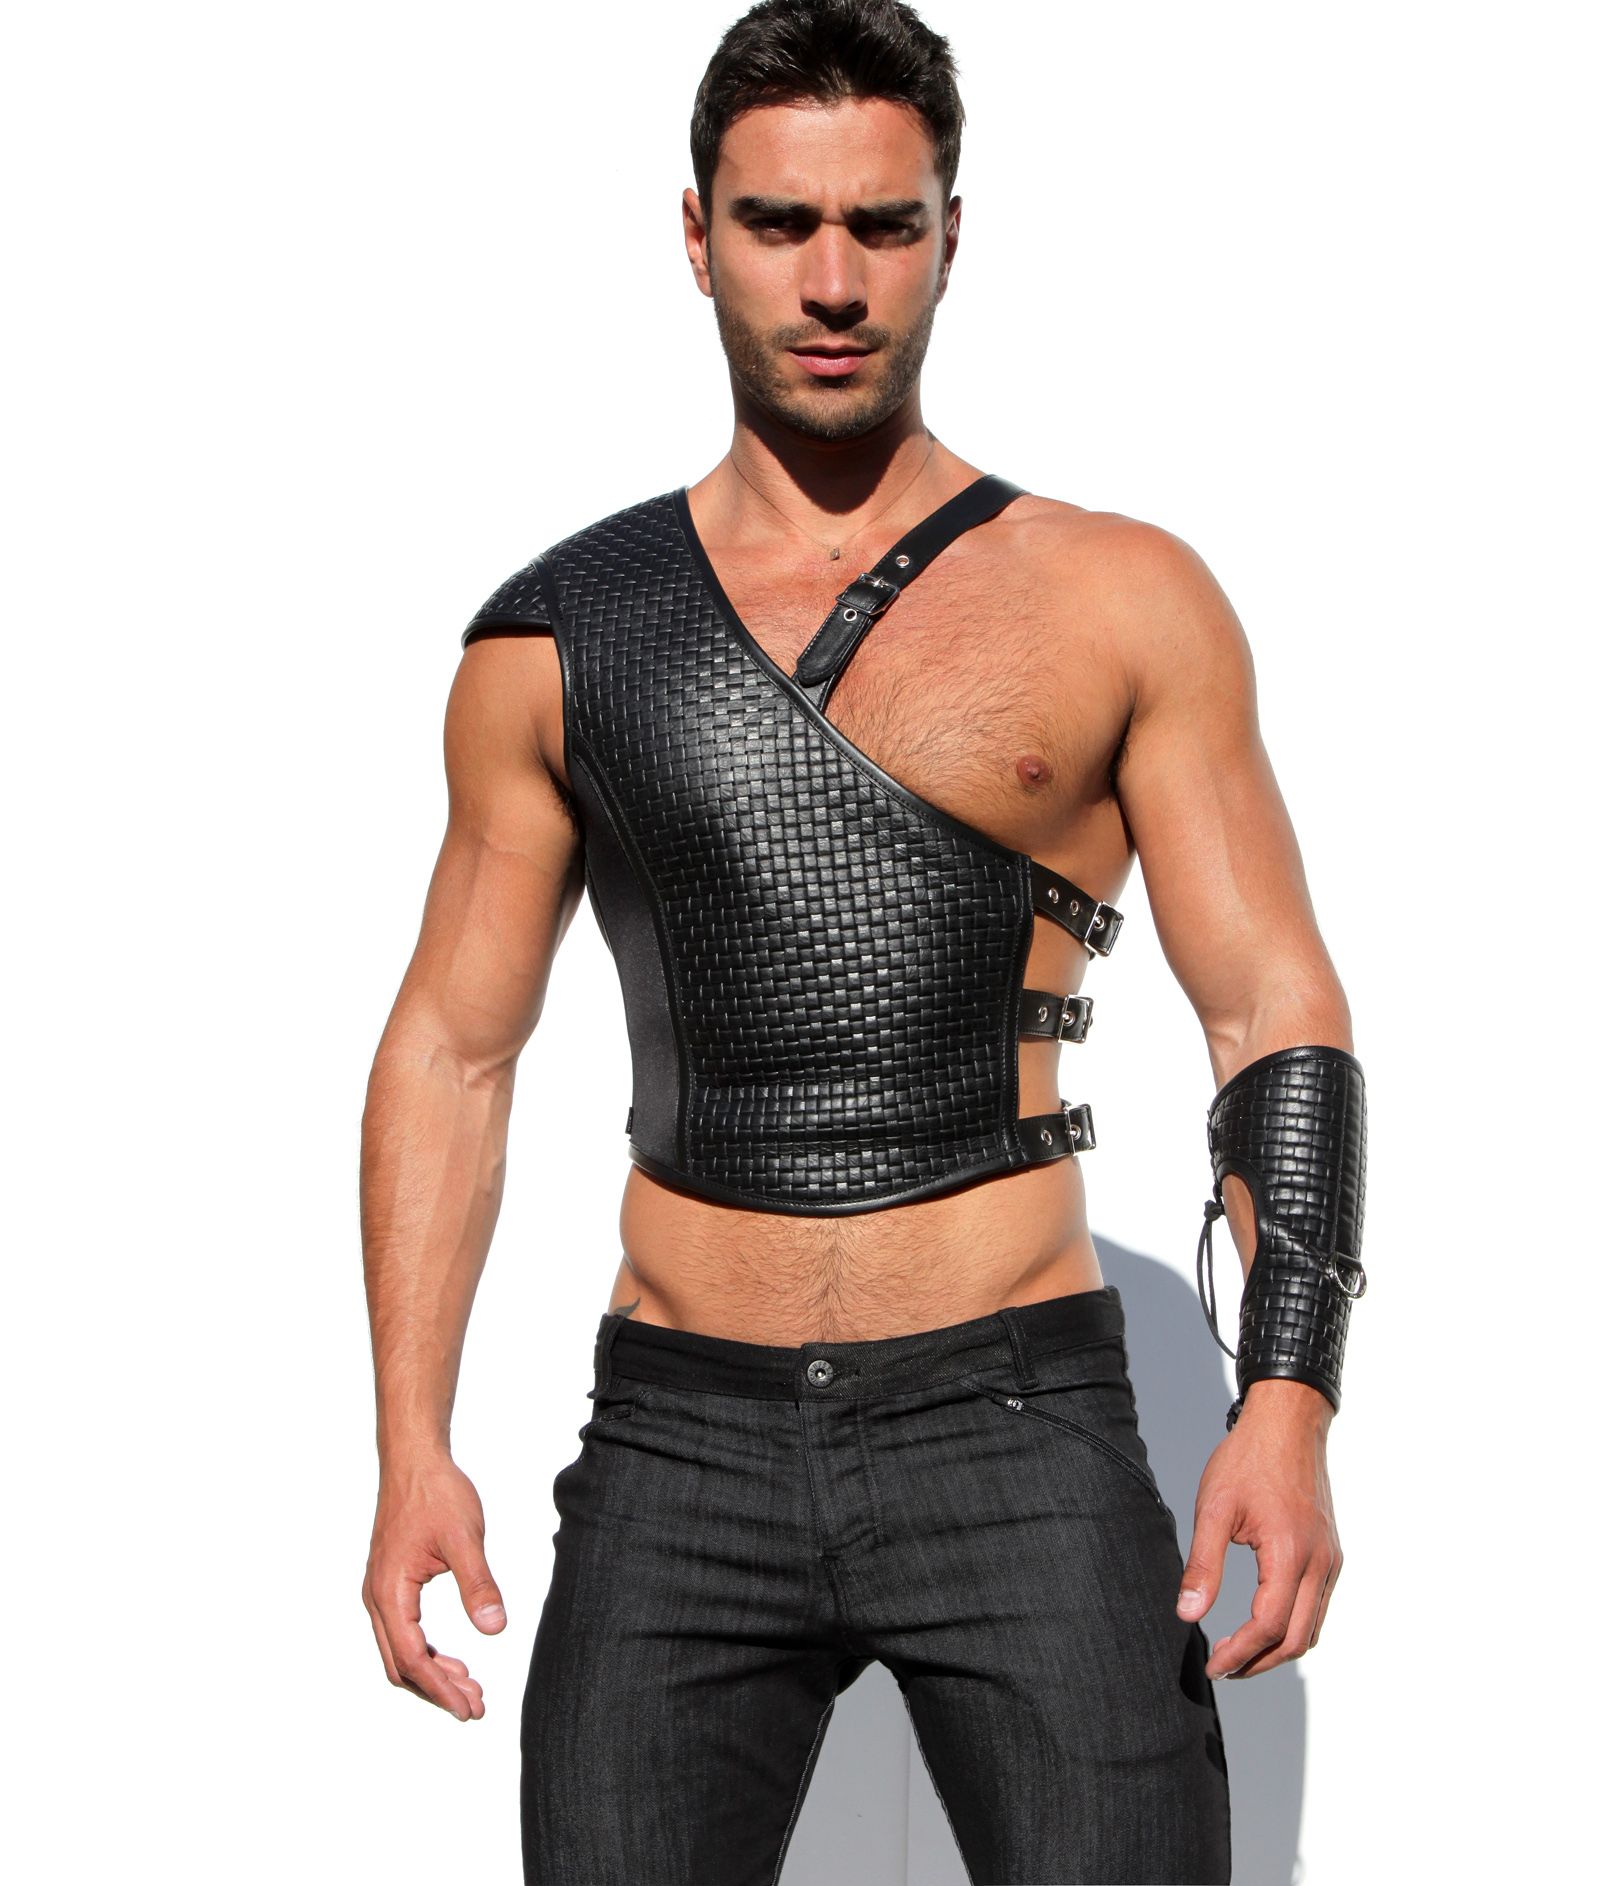 Leather fetish clothing man